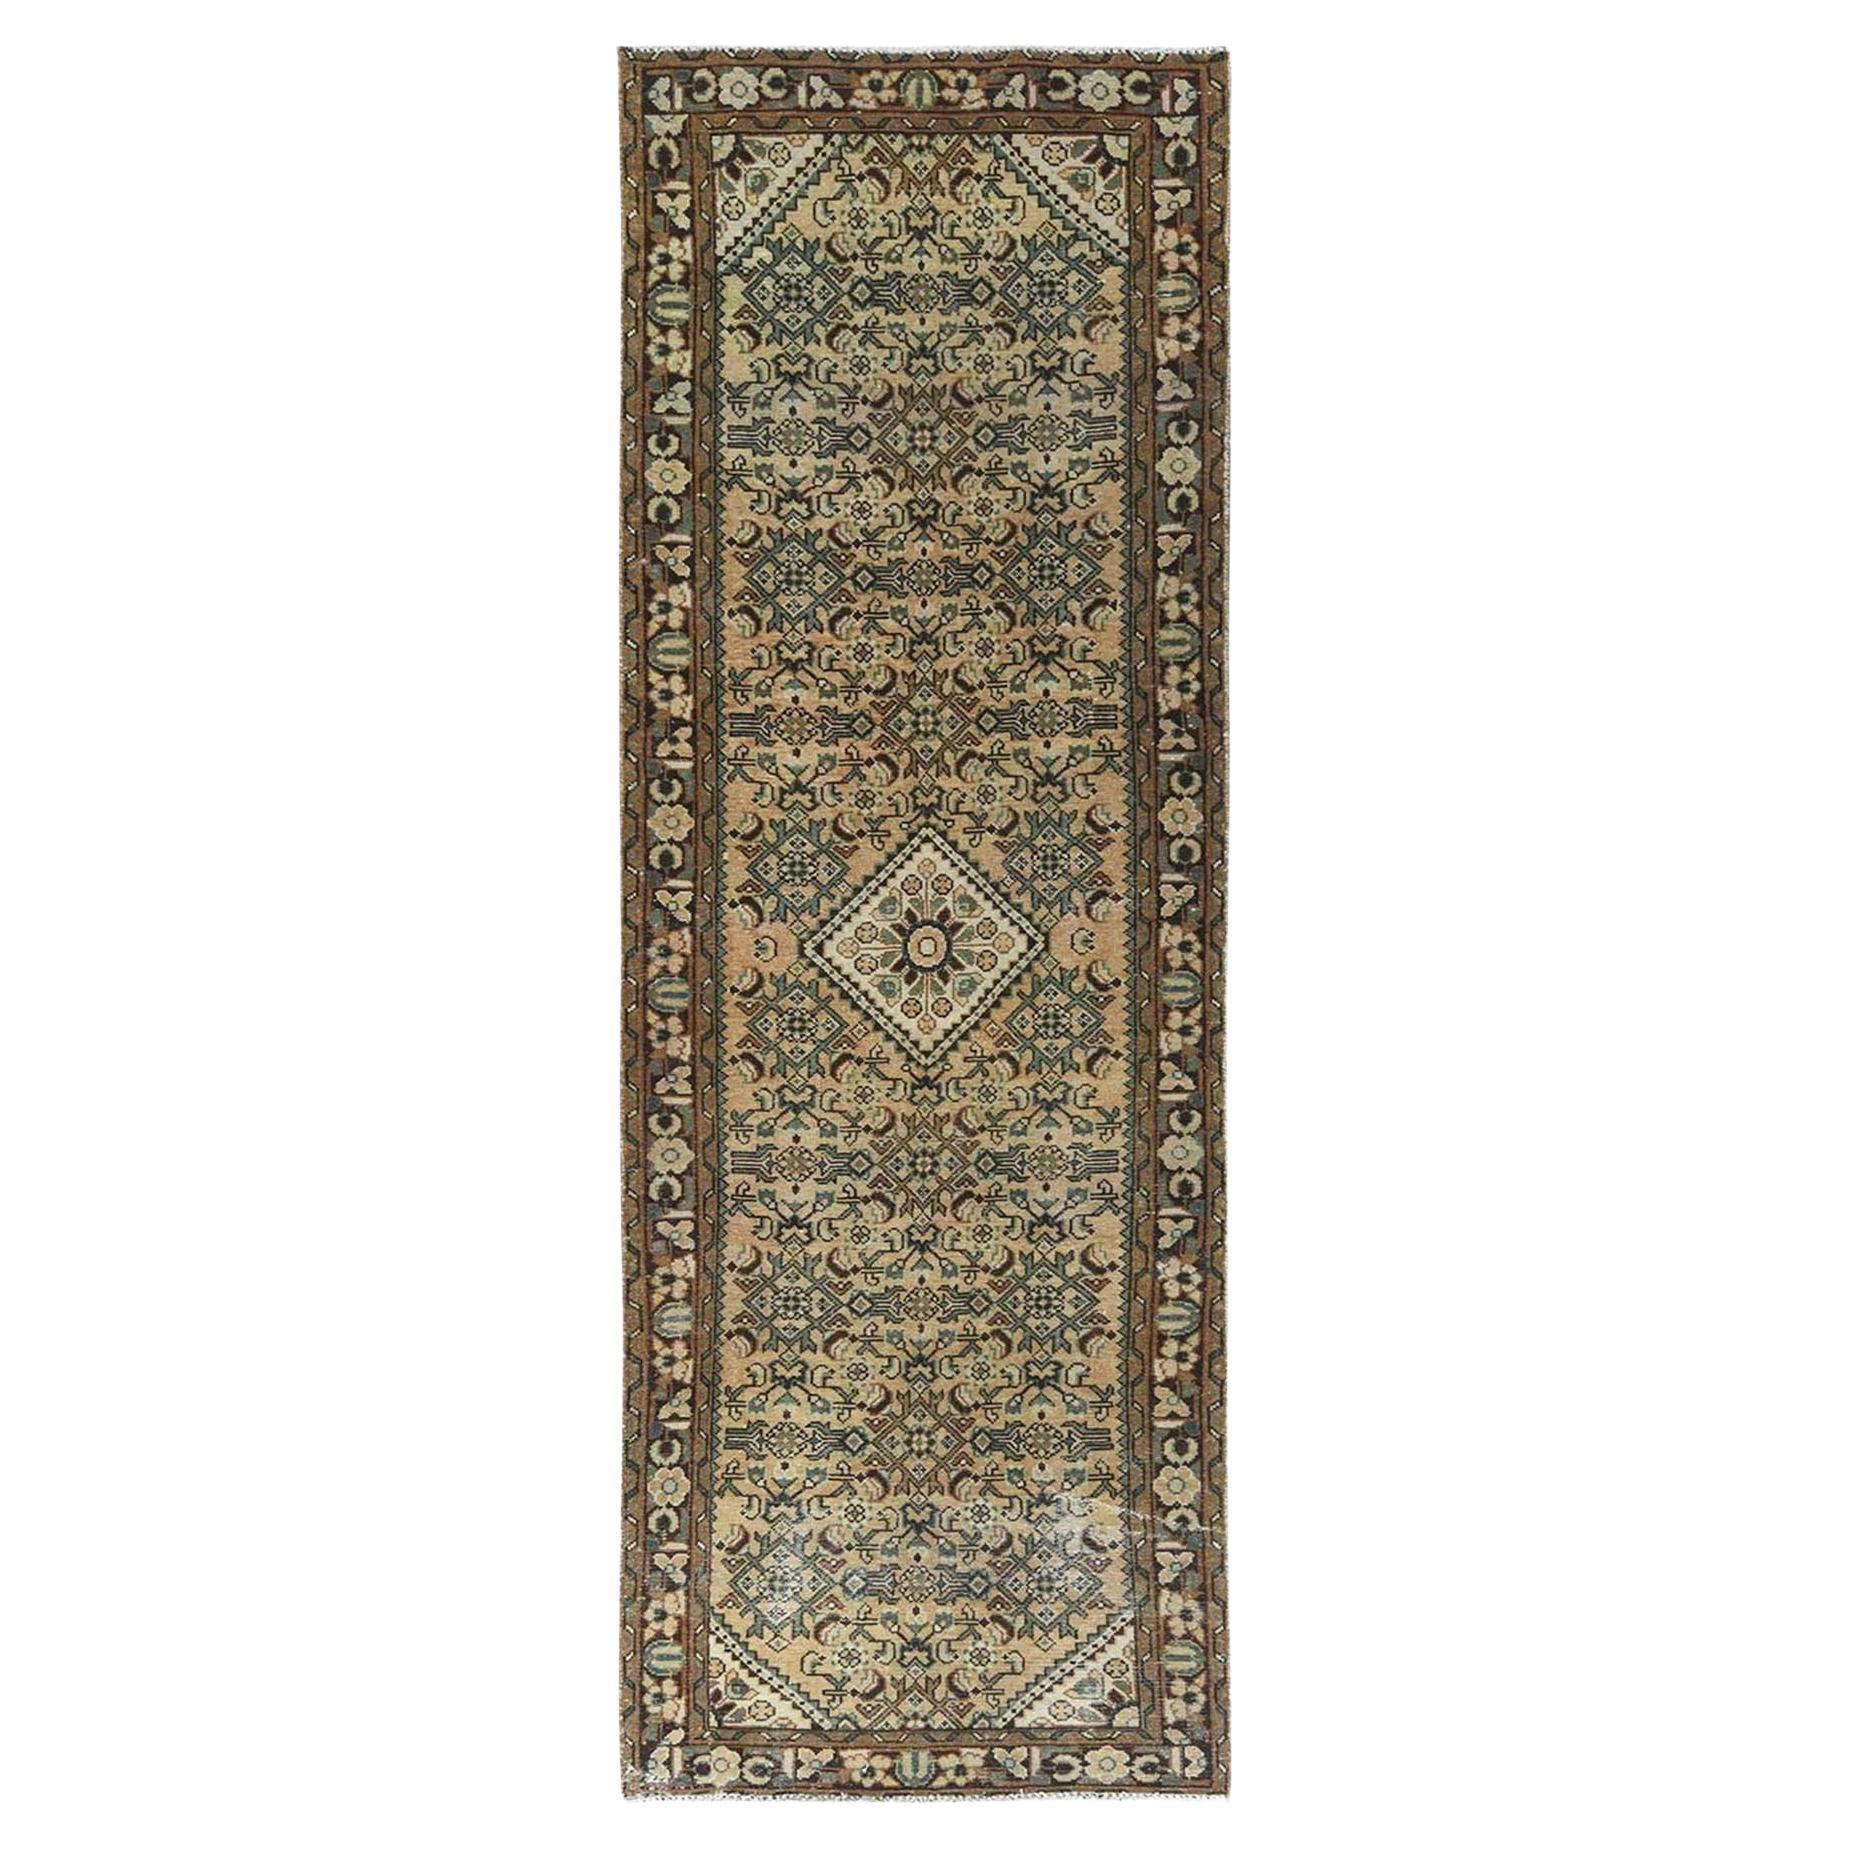 Handgeknüpfter persischer Vintage-Teppich aus reiner Hamadan- reiner Wolle in Beige, böhmisch